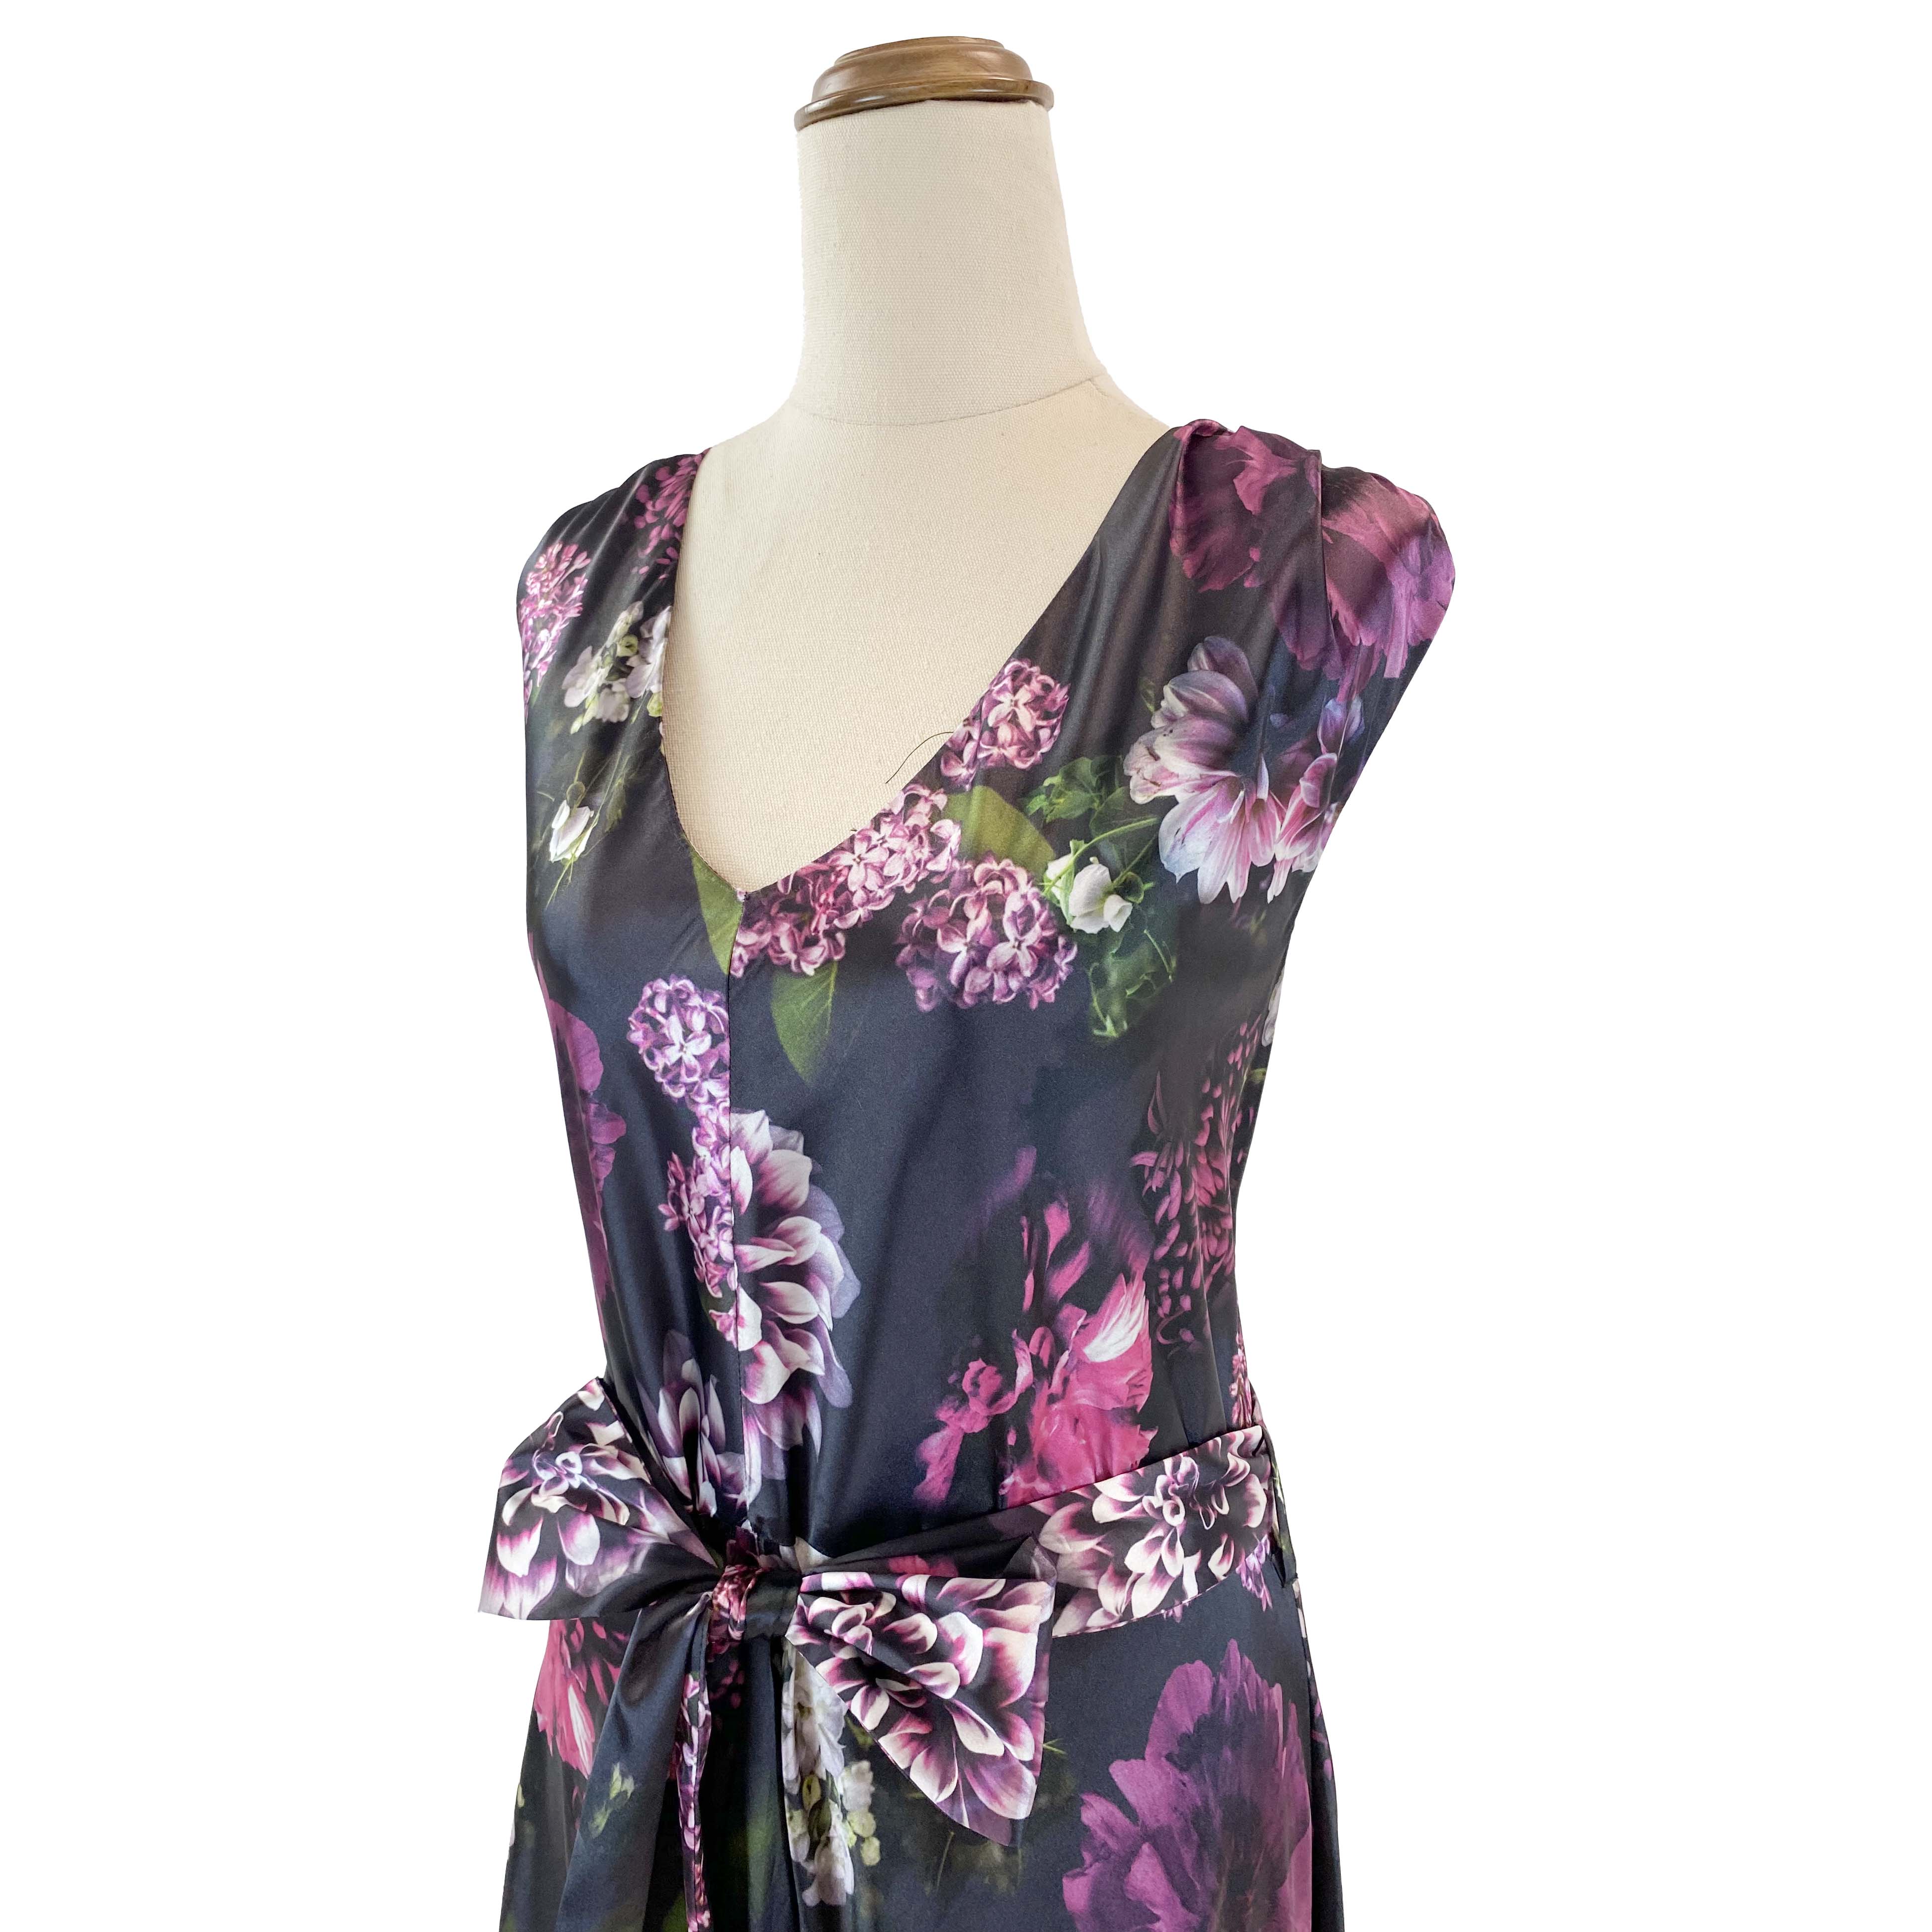 MONTIQUE Floral Maxi Dress